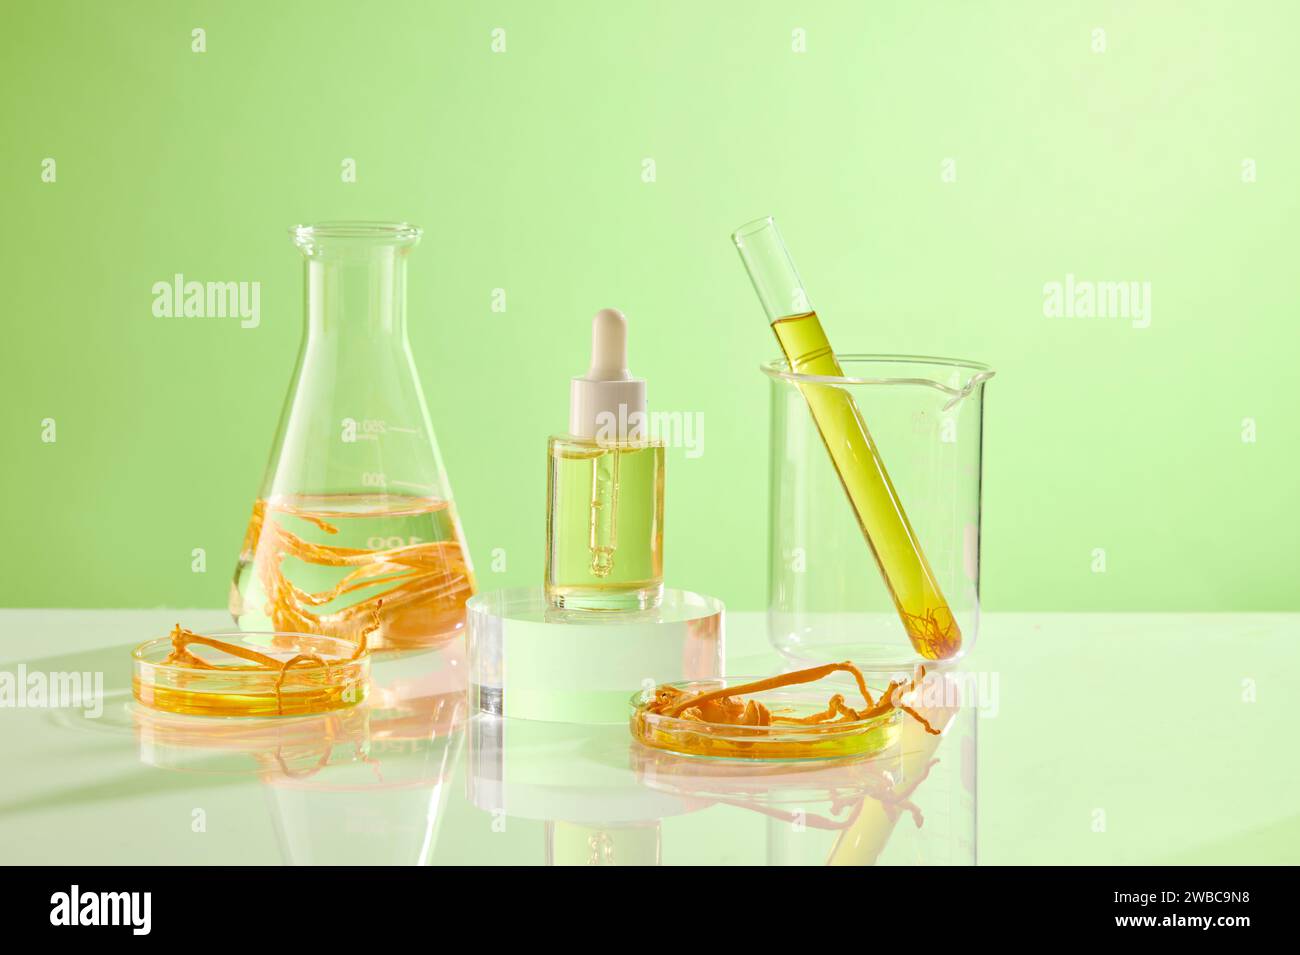 Sur fond vert, flacon en verre contenant du cordyceps et du liquide jaune décoré d'un flacon de sérum sans marque. Scène de maquette pour la publicité Banque D'Images